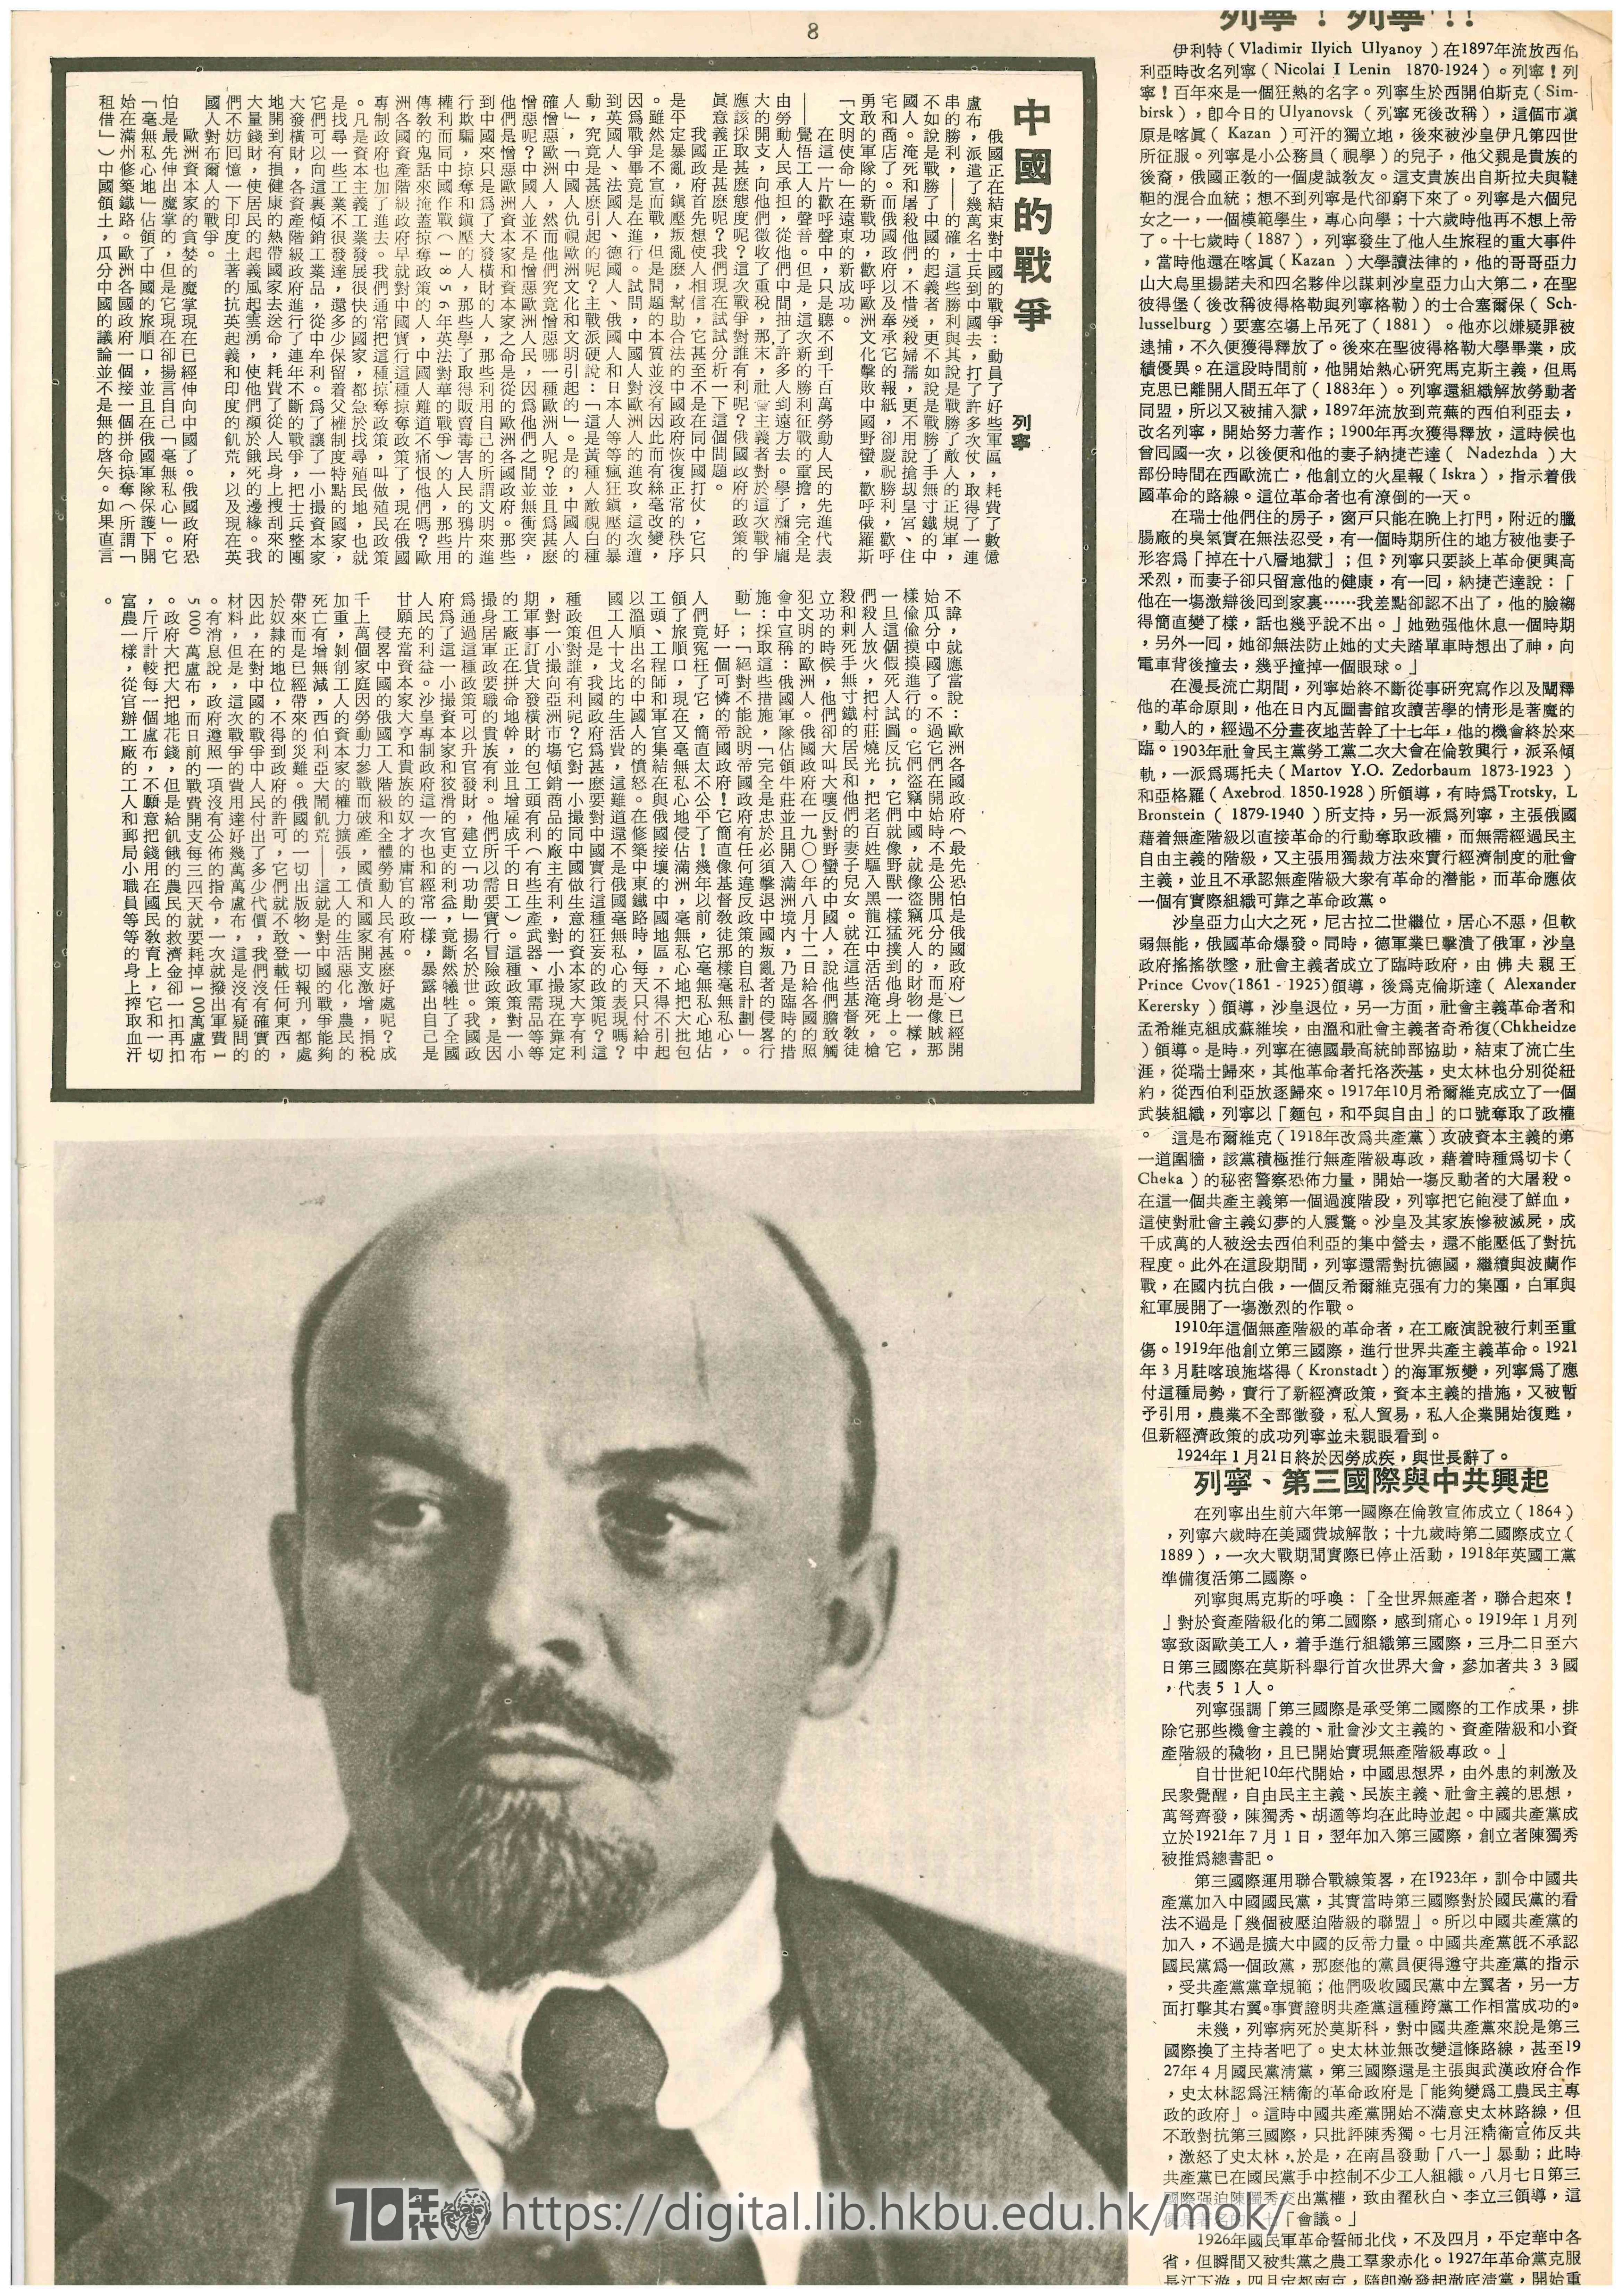  6 共產主義行動的導師 列寧 青韋 